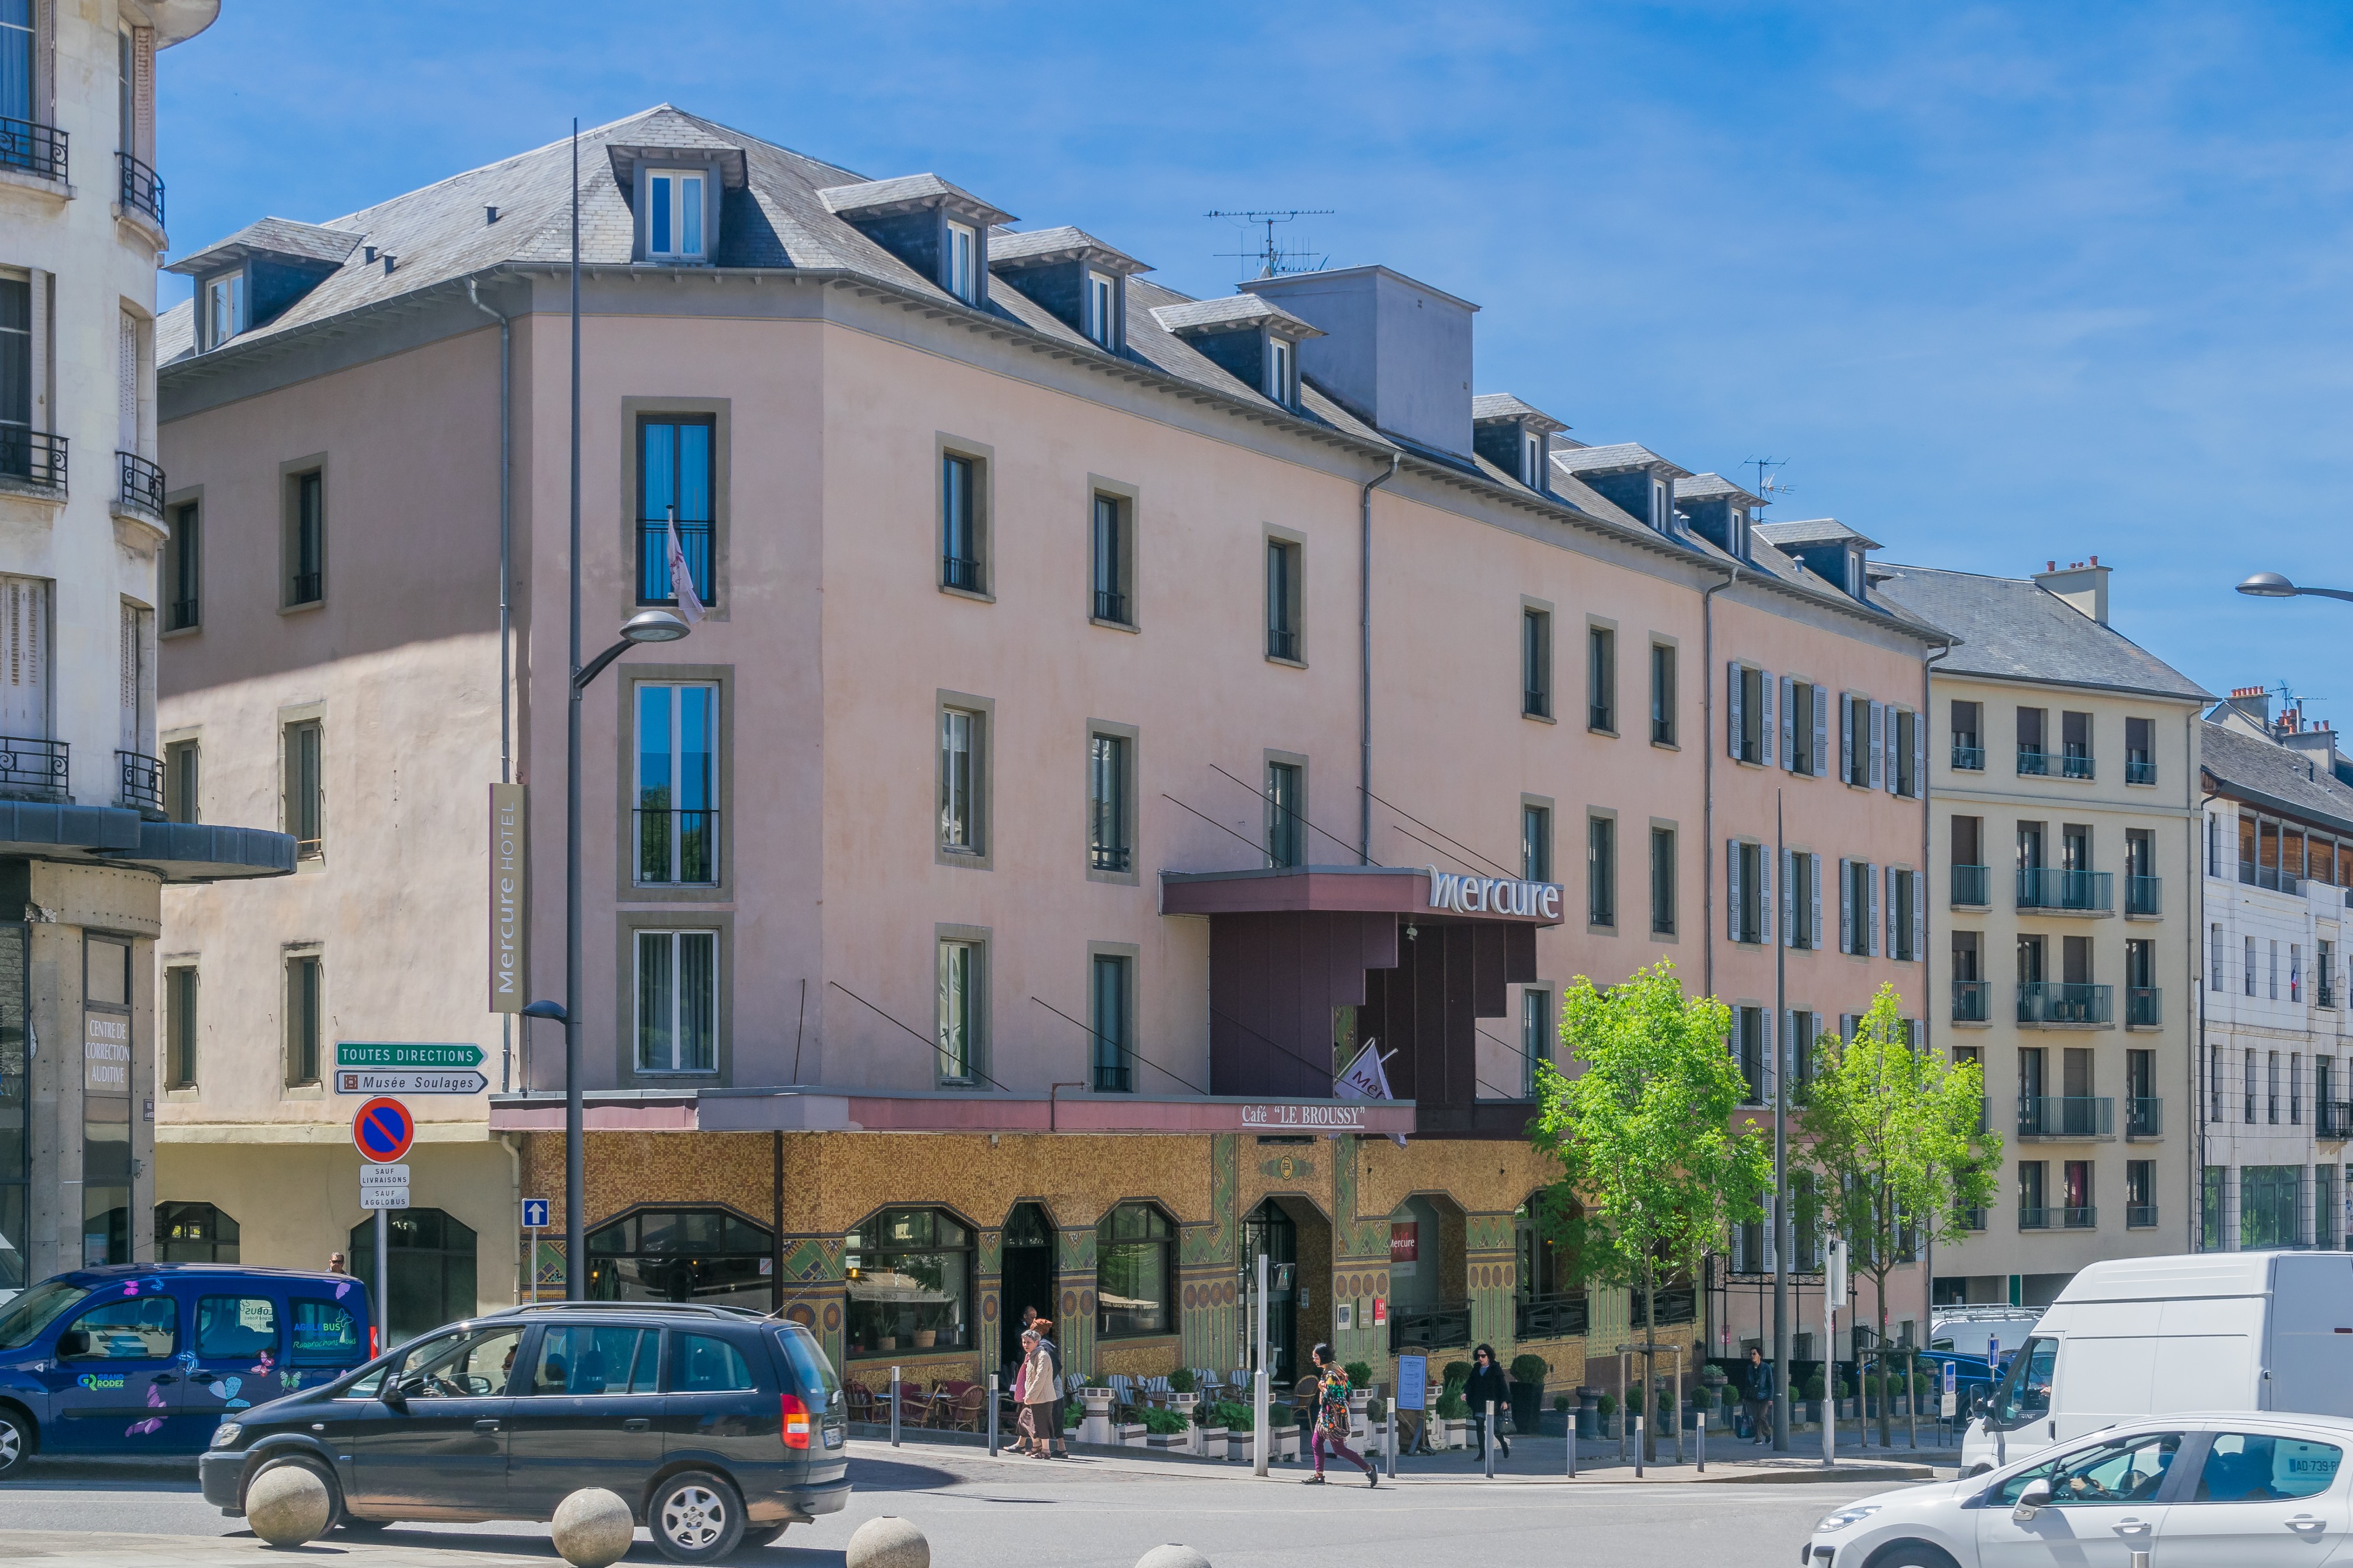 Hotel Mercure in Rodez